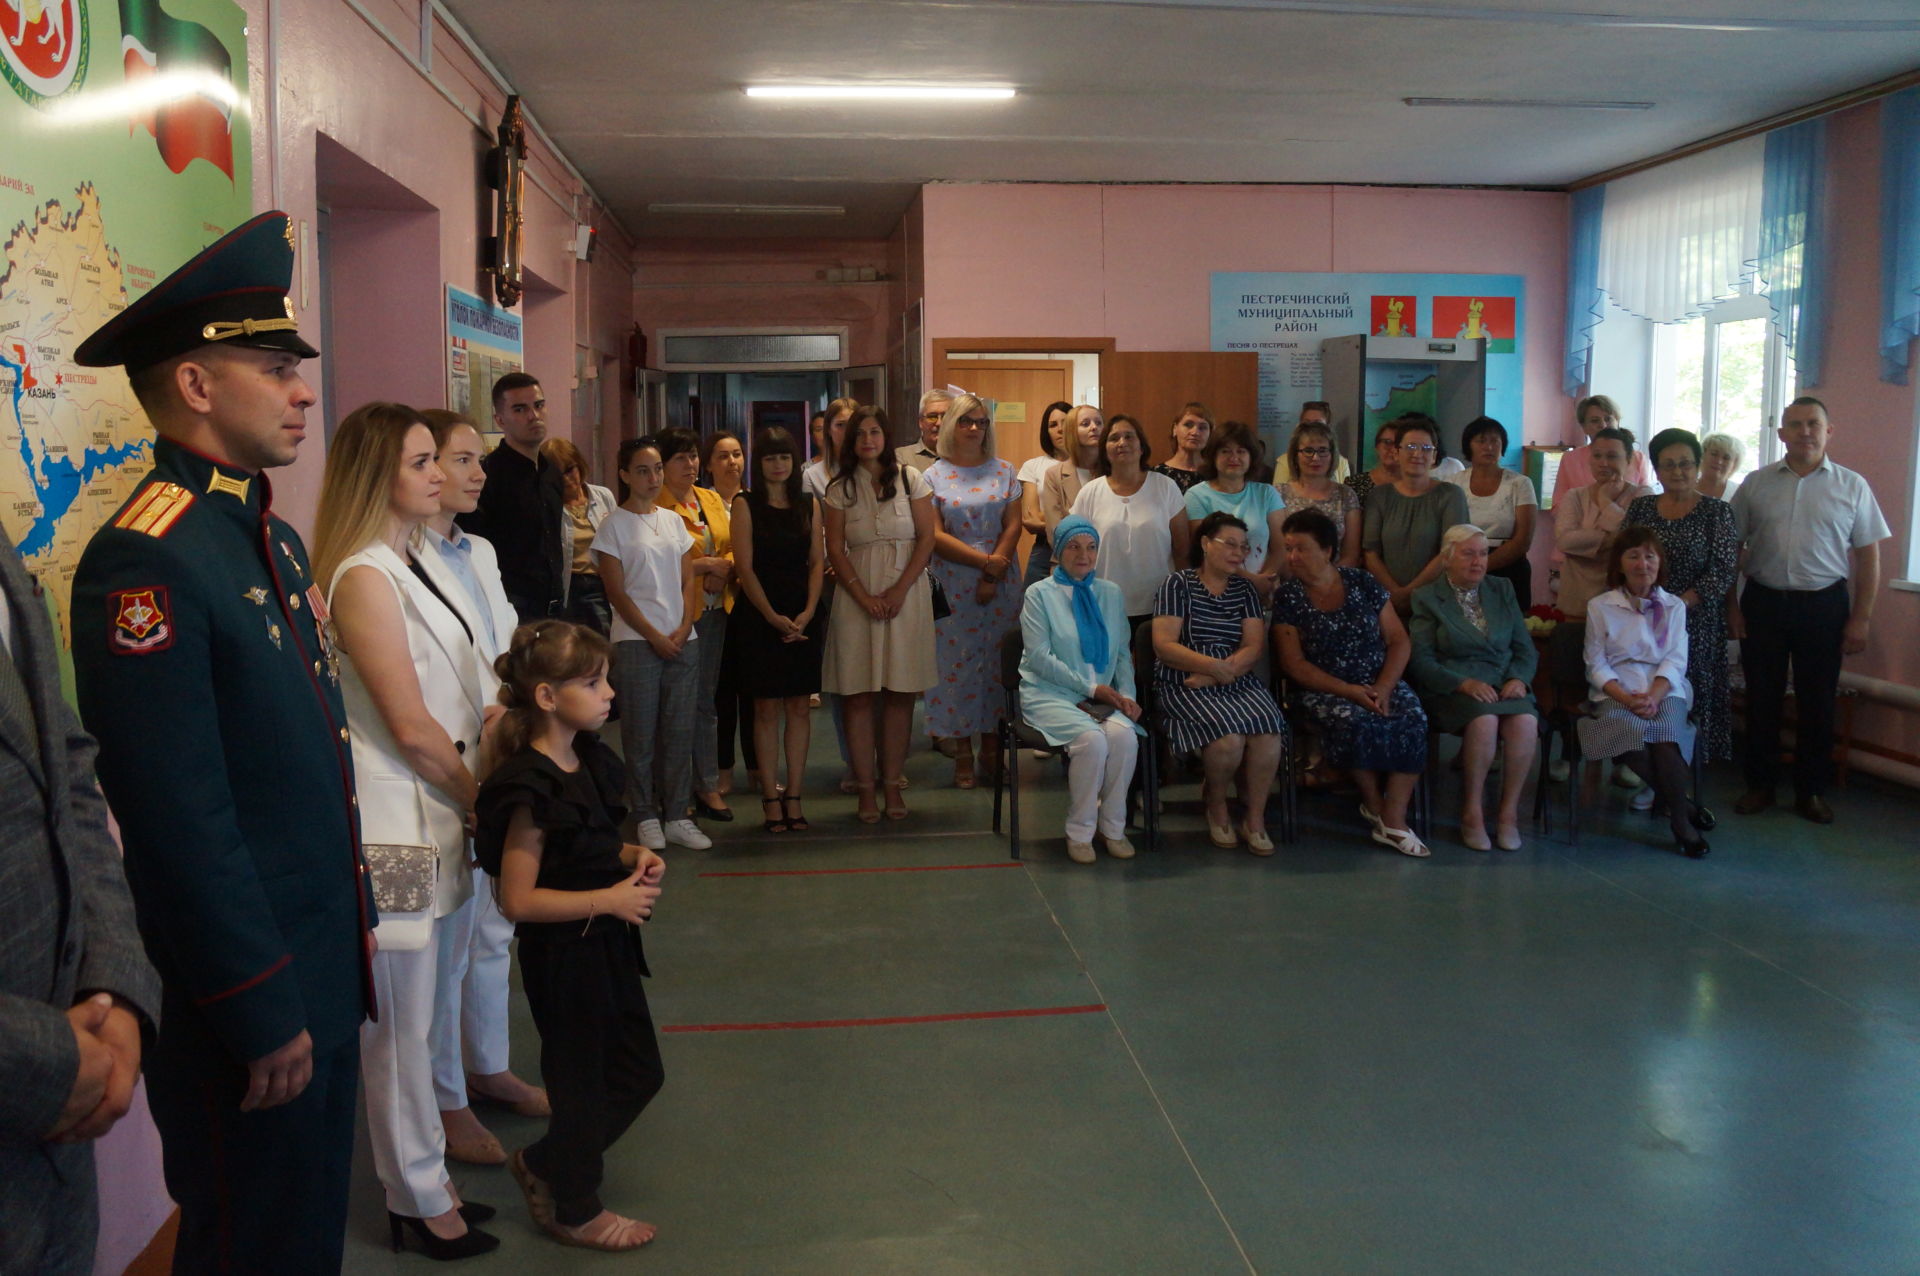 Герой России Иван Додосов встретился со школьниками и посетил и музей в Альвидино